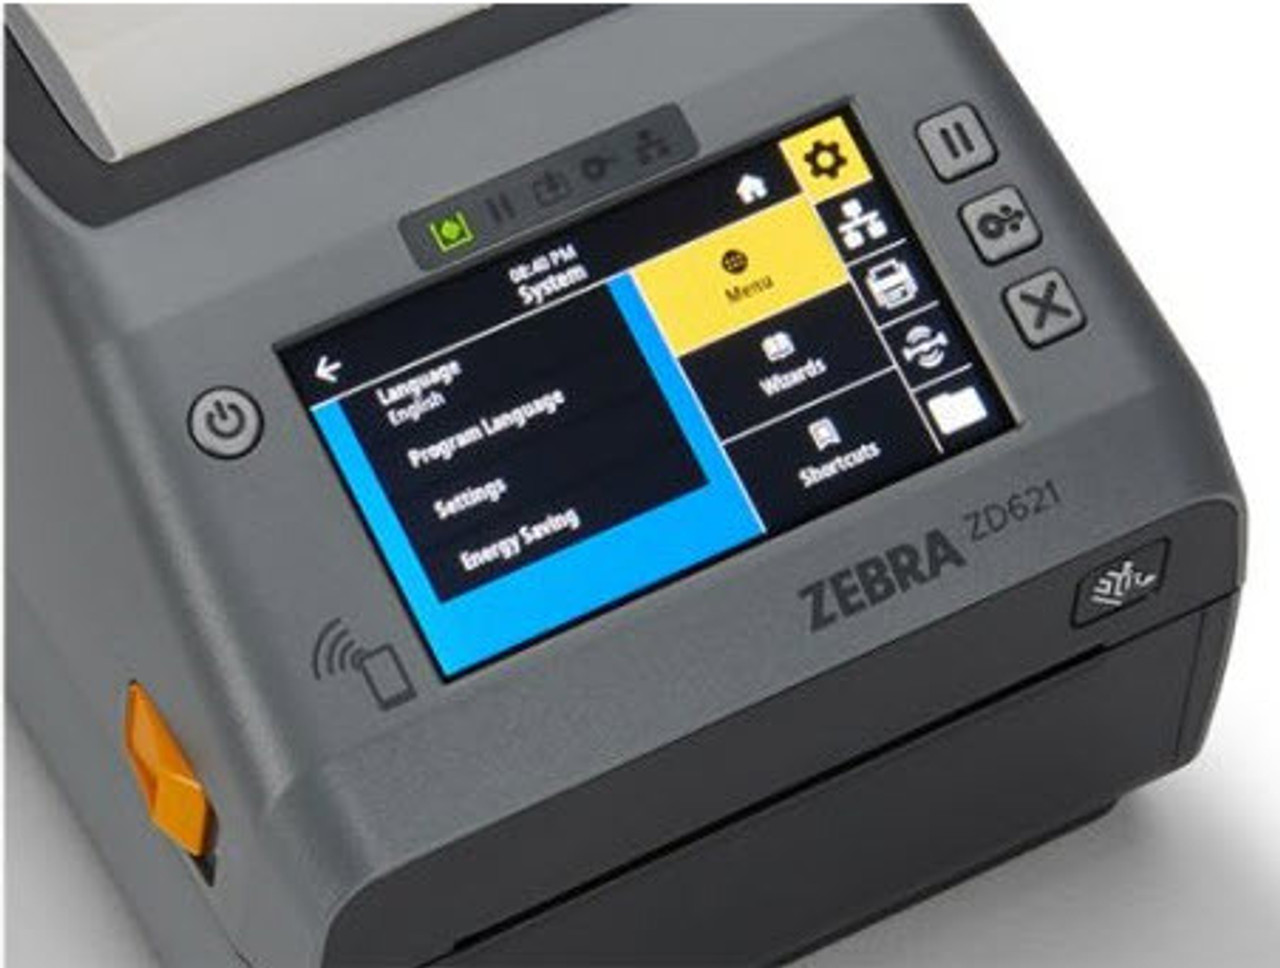 ZD6A142-D01F00EZ Impresora de Etiquetas Zebra ZD621 203dpi BTLE5